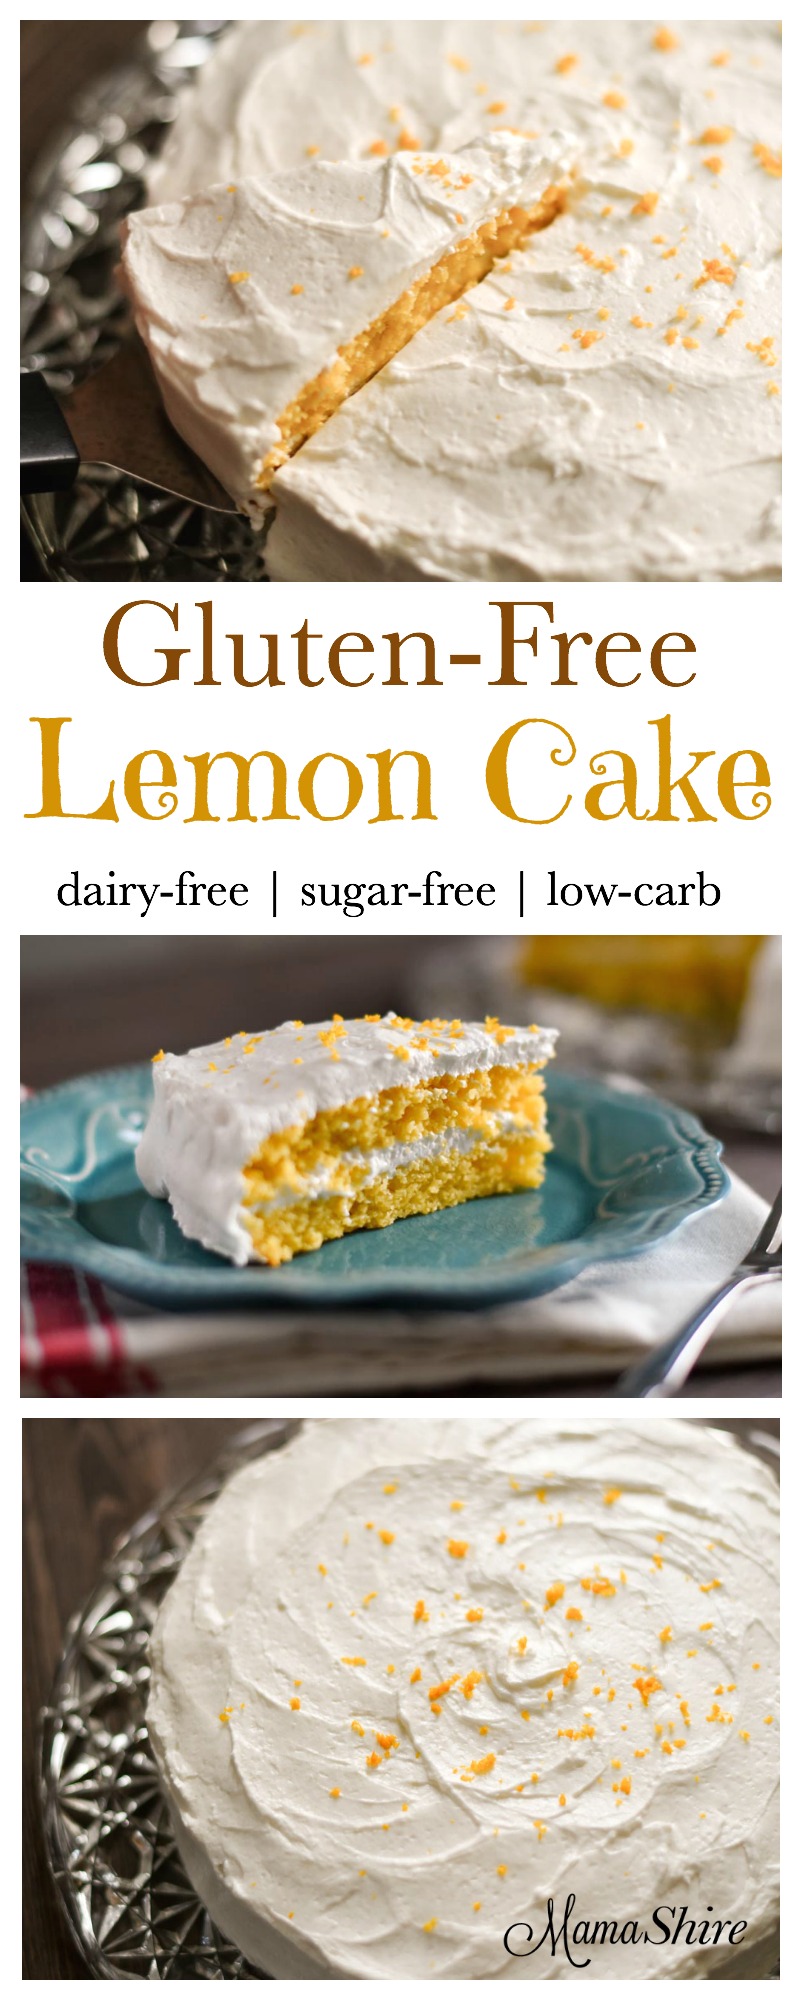 Gluten-Free Lemon Cake - Dairy-free, sugar-free